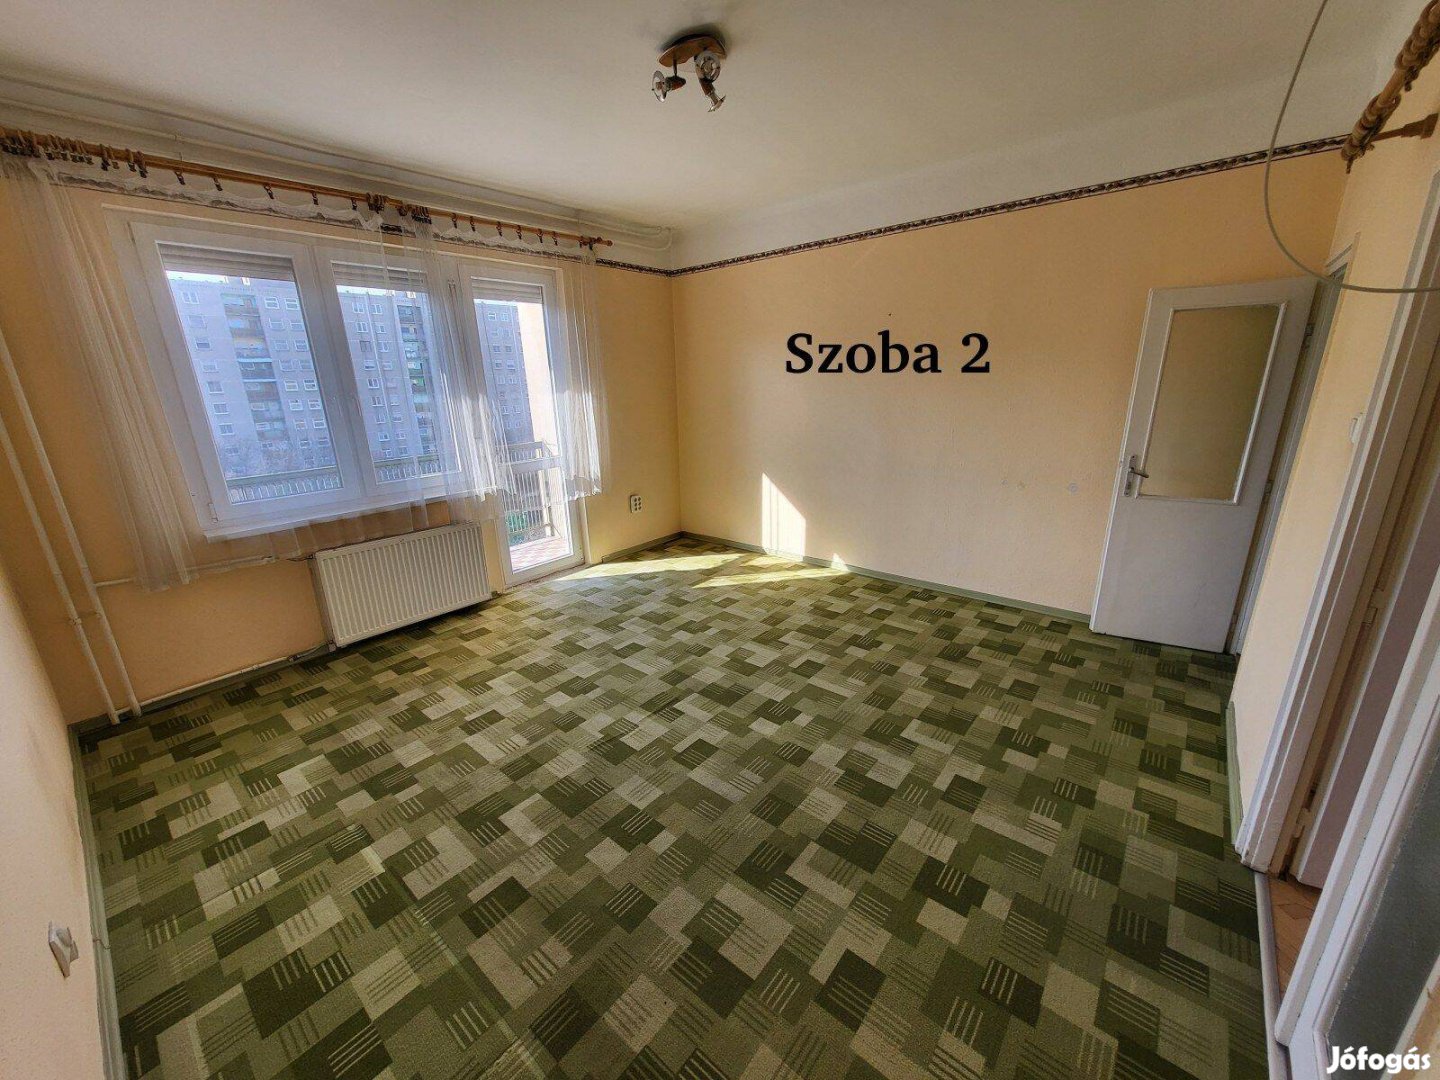 54 négyzetméteres, 2 szobás lakás a Pöttyös utcai M3 metrónál